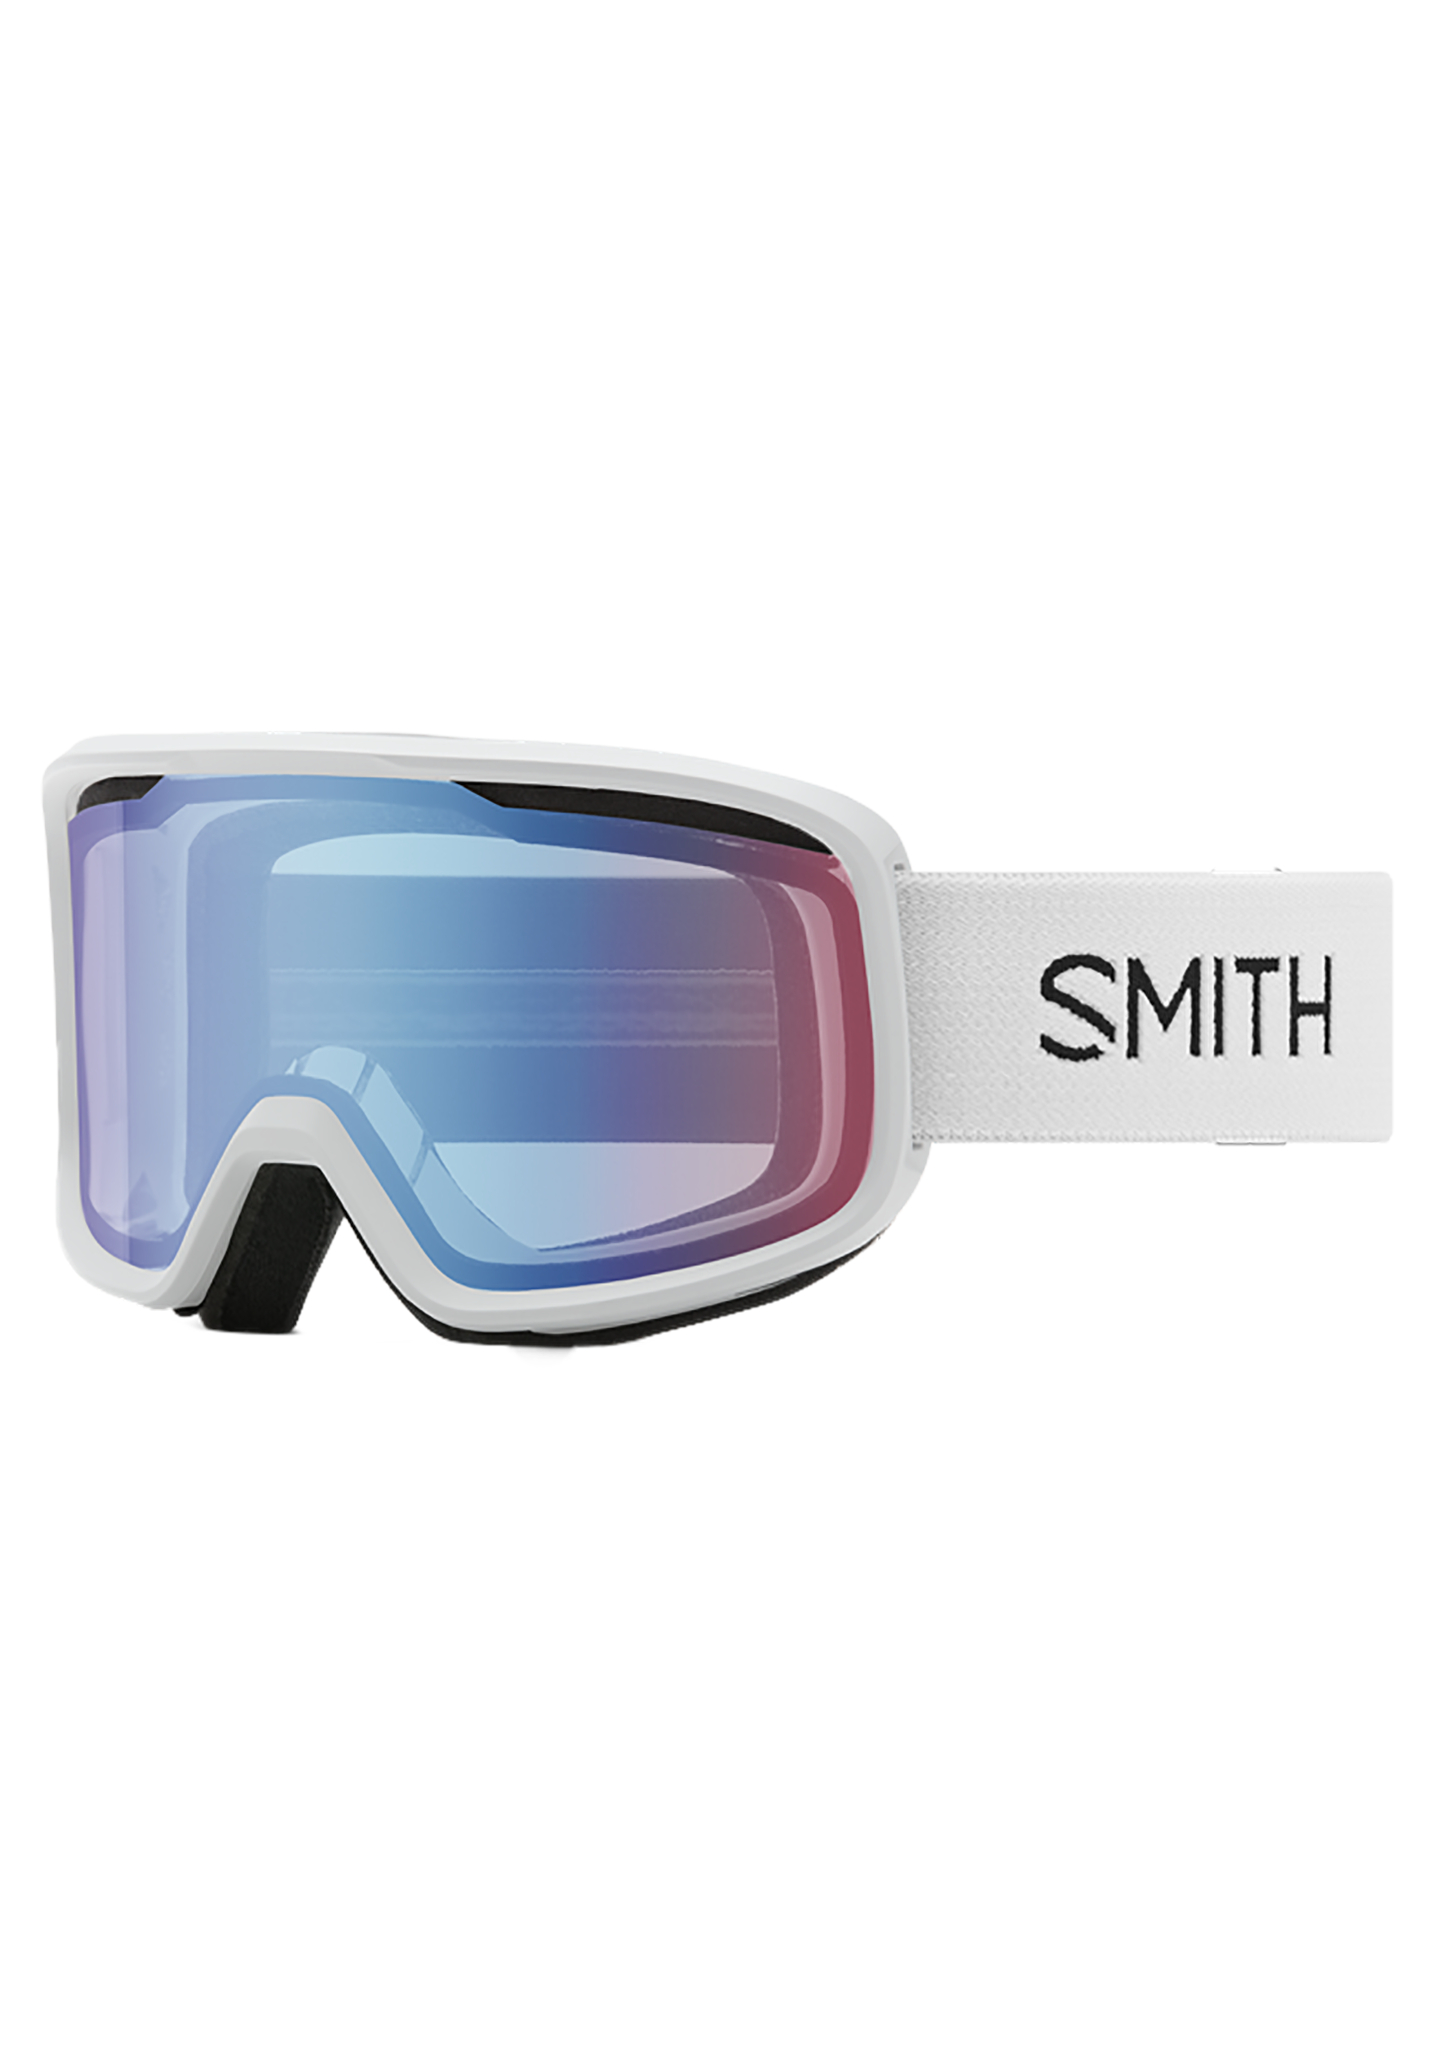 Smith Frontier Snowboardbrillen blau flieder One Size